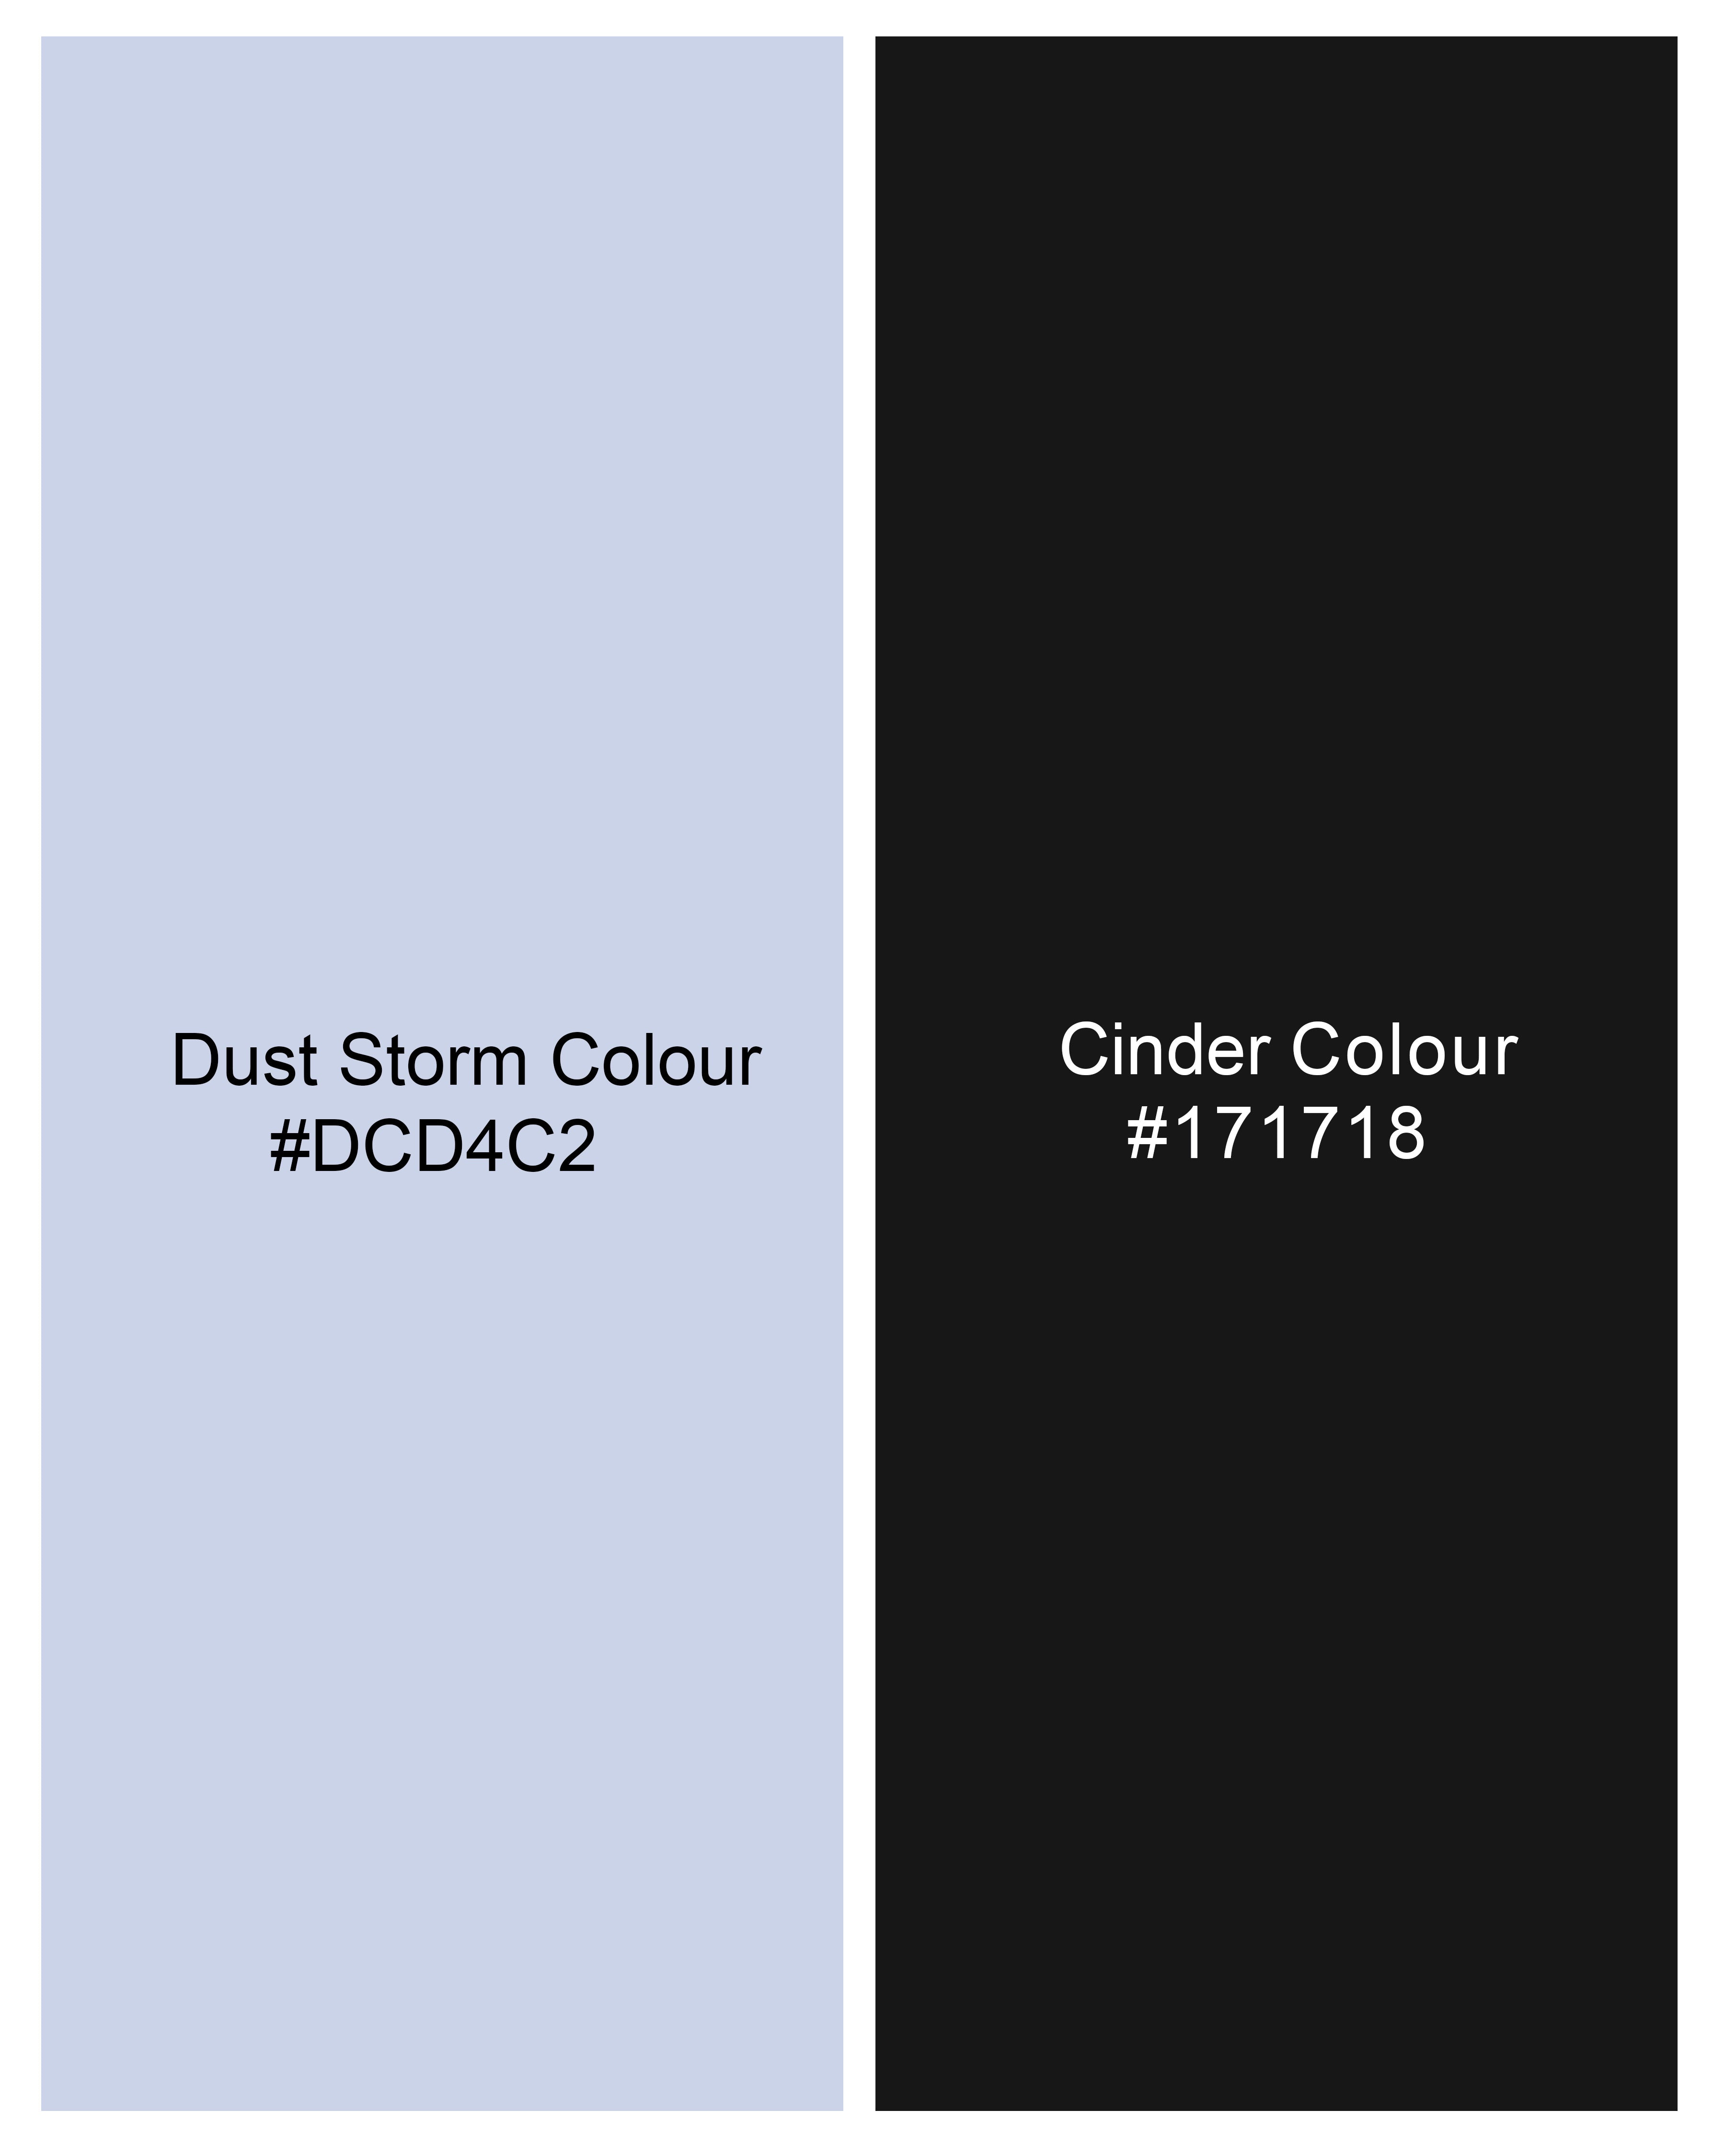 Dust Storm Blue Striped Luxurious Linen Shirt  8759-M-38,8759-M-H-38,8759-M-39,8759-M-H-39,8759-M-40,8759-M-H-40,8759-M-42,8759-M-H-42,8759-M-44,8759-M-H-44,8759-M-46,8759-M-H-46,8759-M-48,8759-M-H-48,8759-M-50,8759-M-H-50,8759-M-52,8759-M-H-52